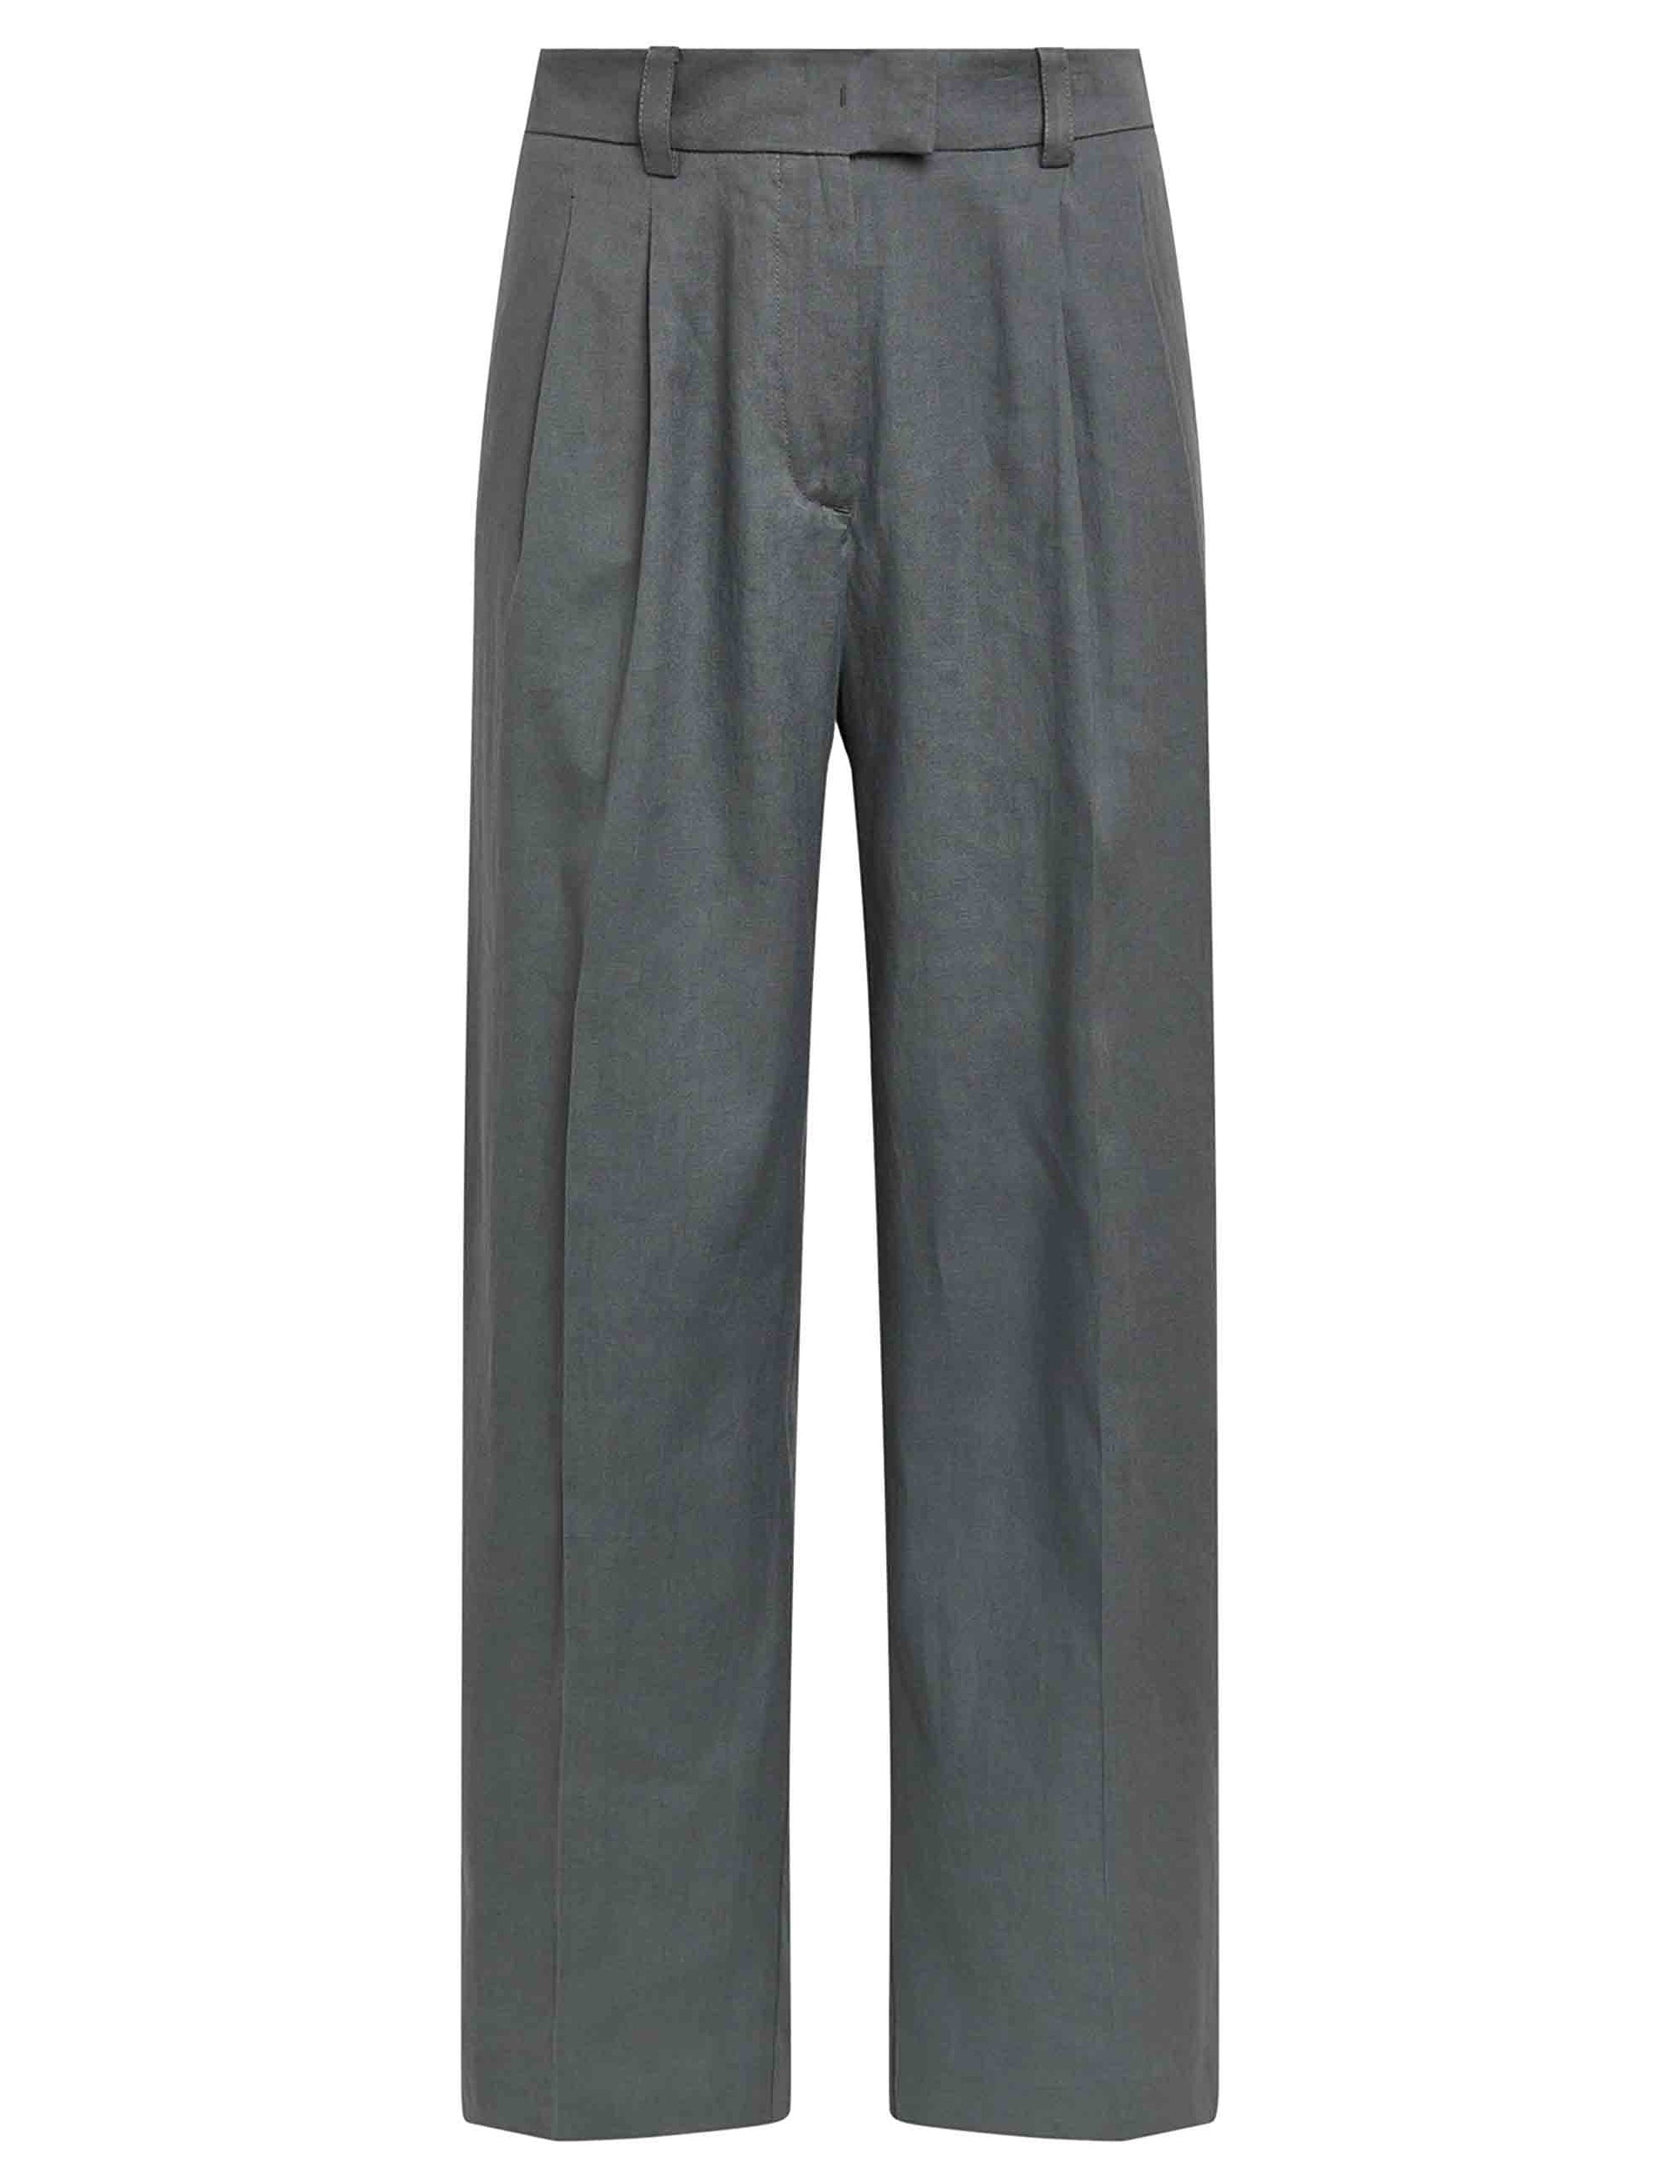 Pantaloni donna Linen in misto lino e cotone grigio